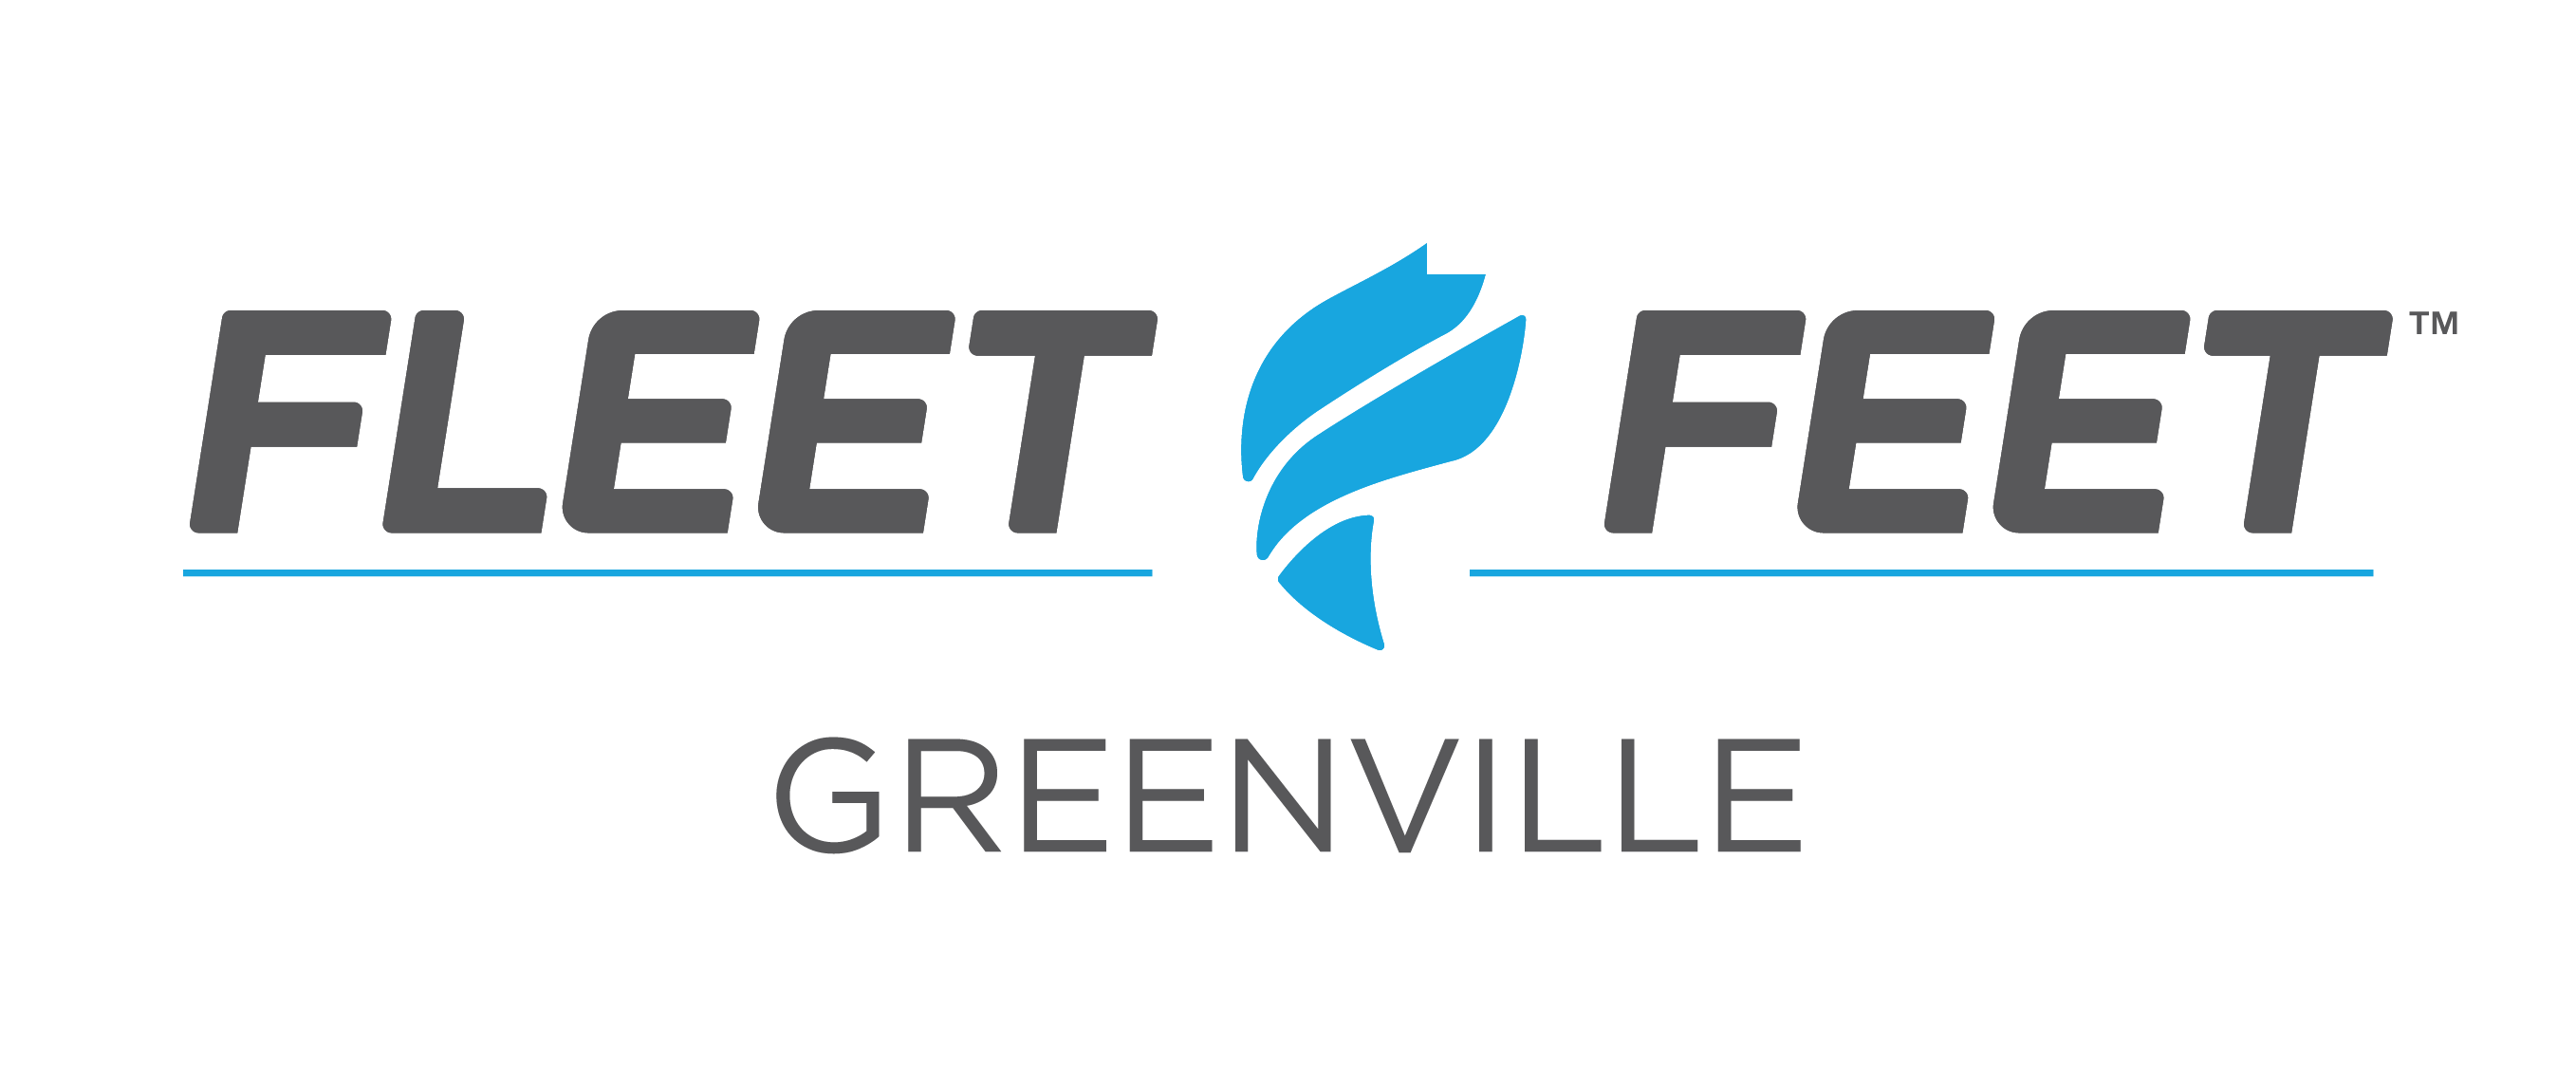 Fleet Feet Greenville